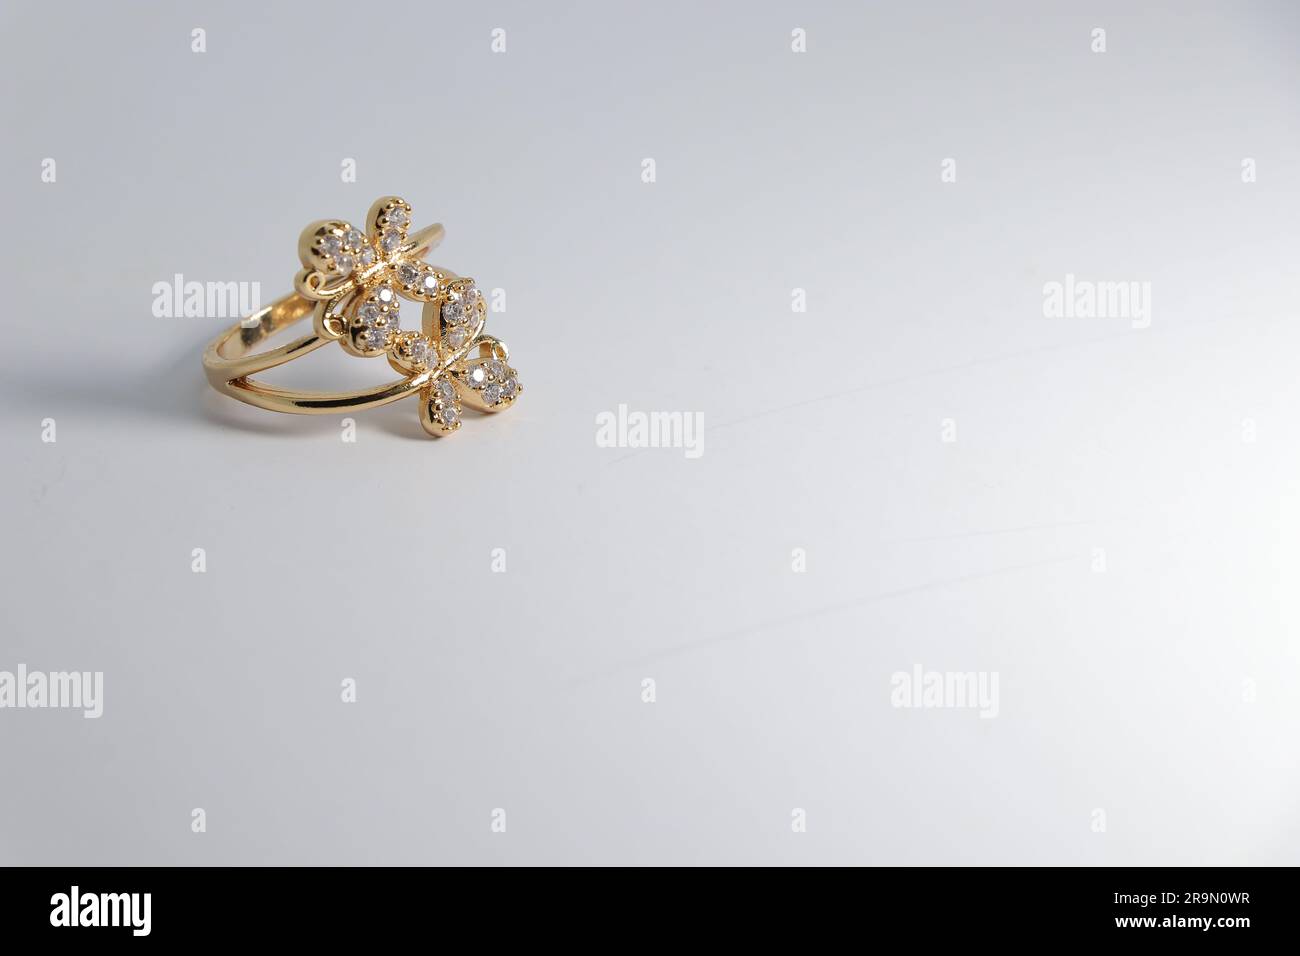 Brilliance élégante : bague d'or artificielle avec pierre blanche sur toile blanche - parfait pour la vente en ligne! Banque D'Images